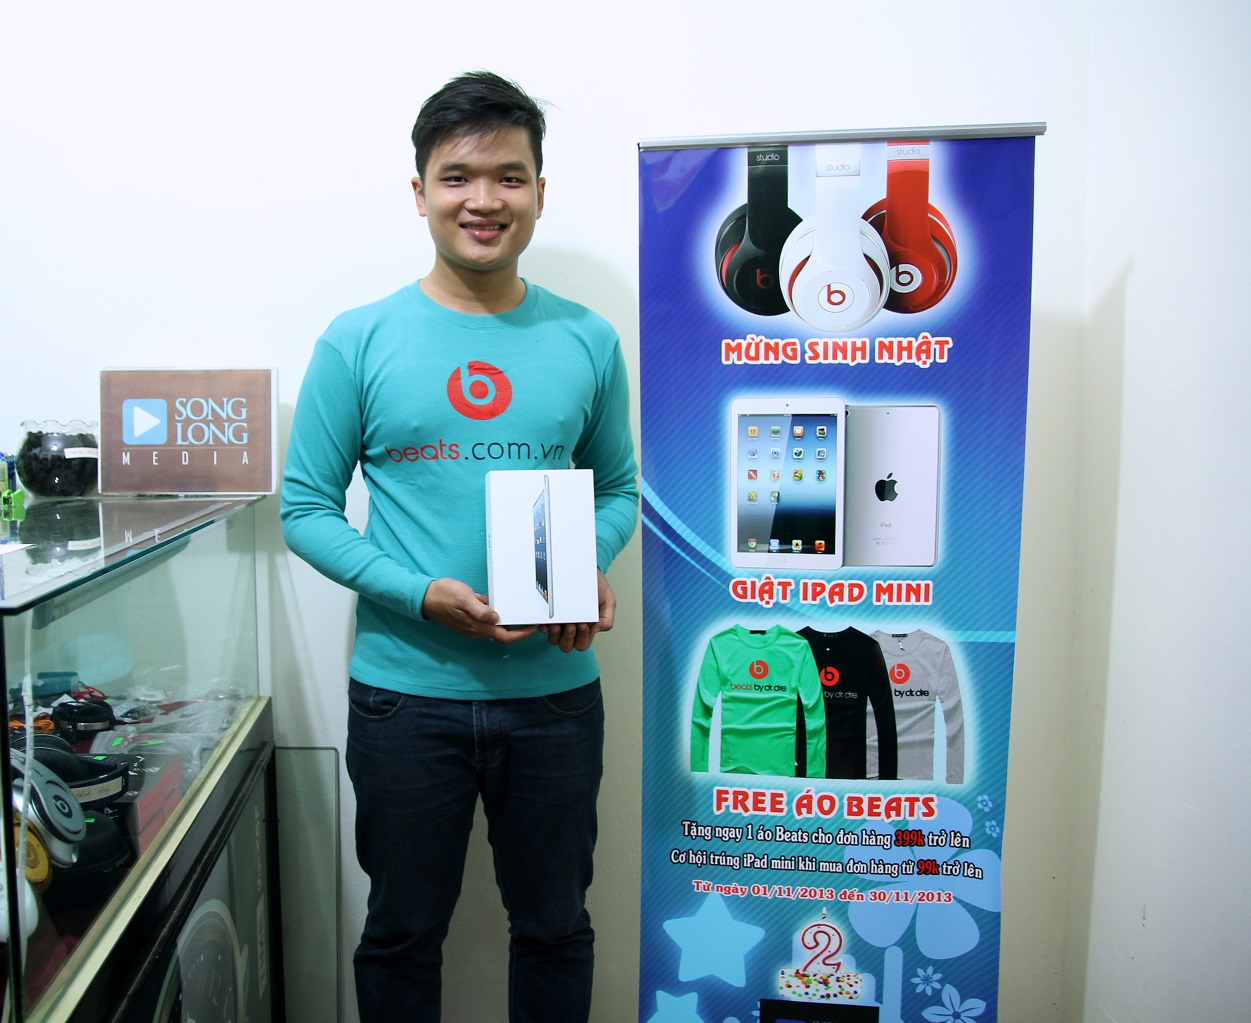 Công bố giải thưởng trúng iPad Mini - Event tháng 11/2013